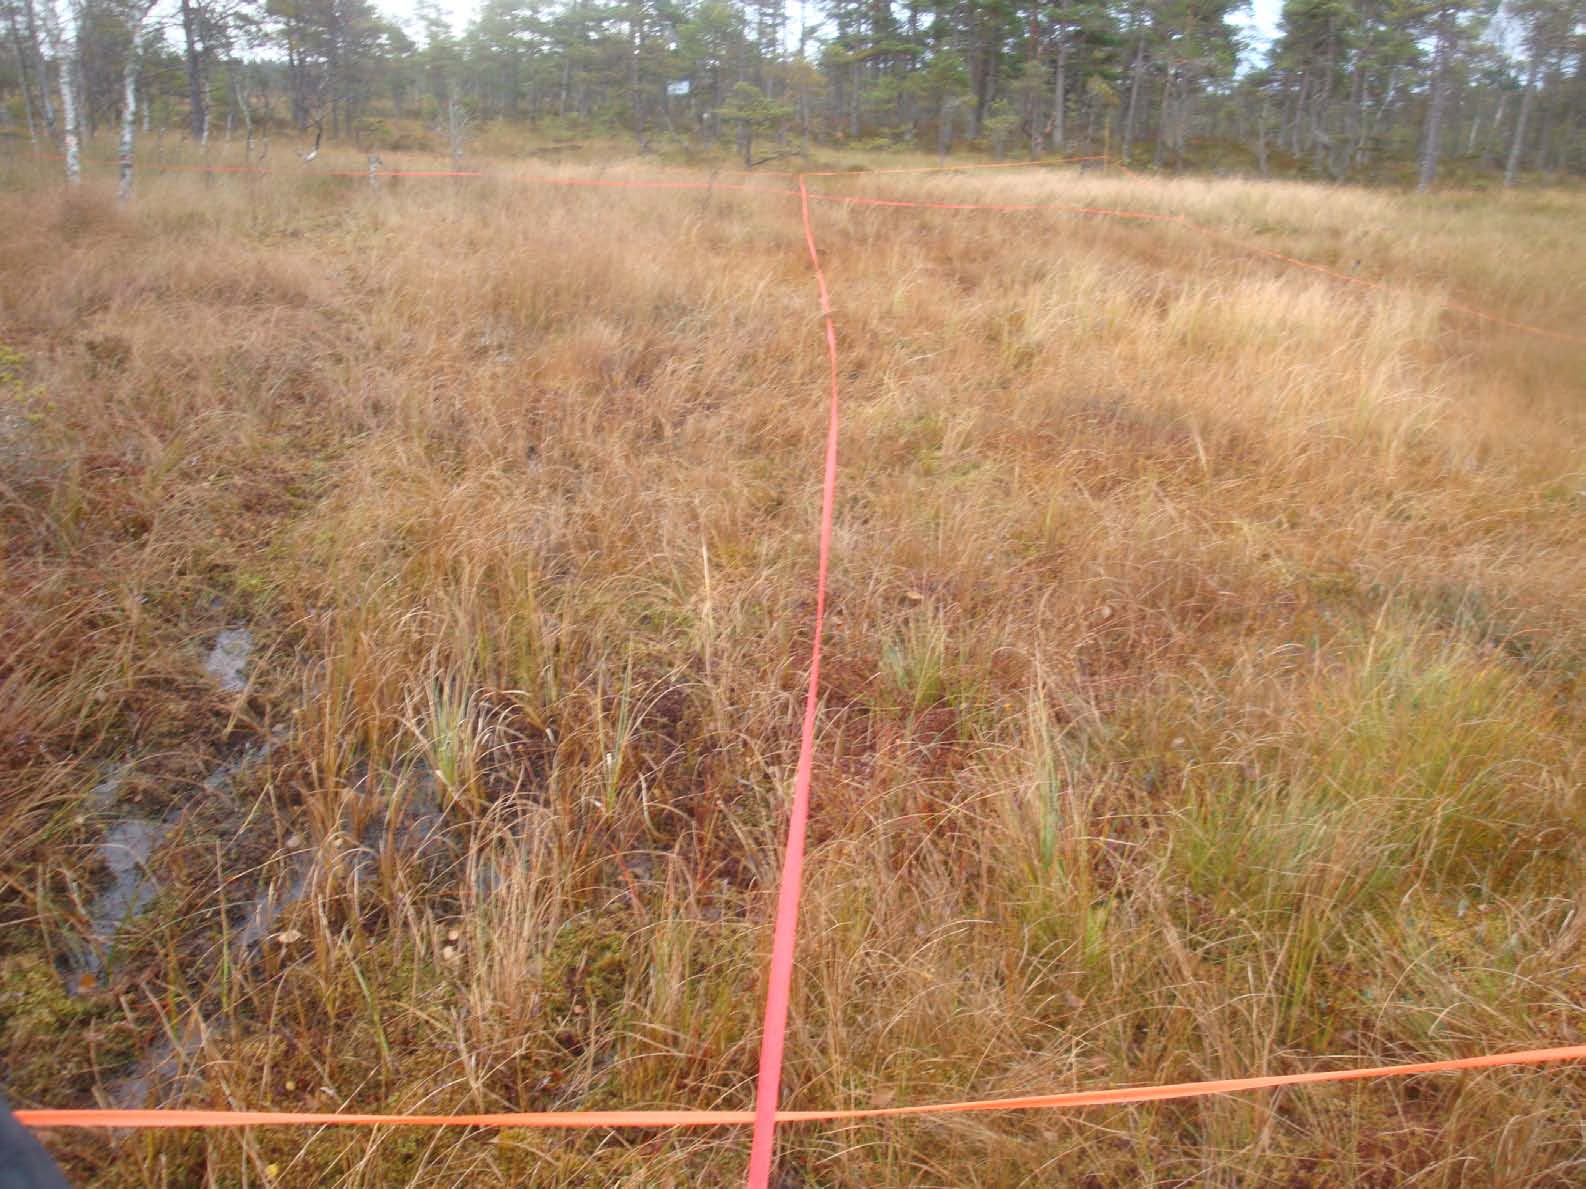 Jag spände upp röda markeringsband var femte meter och lade på så vis ut ett rutnät inne i uppmätningsområdet. Vid var femte meter tog jag även ett foto.